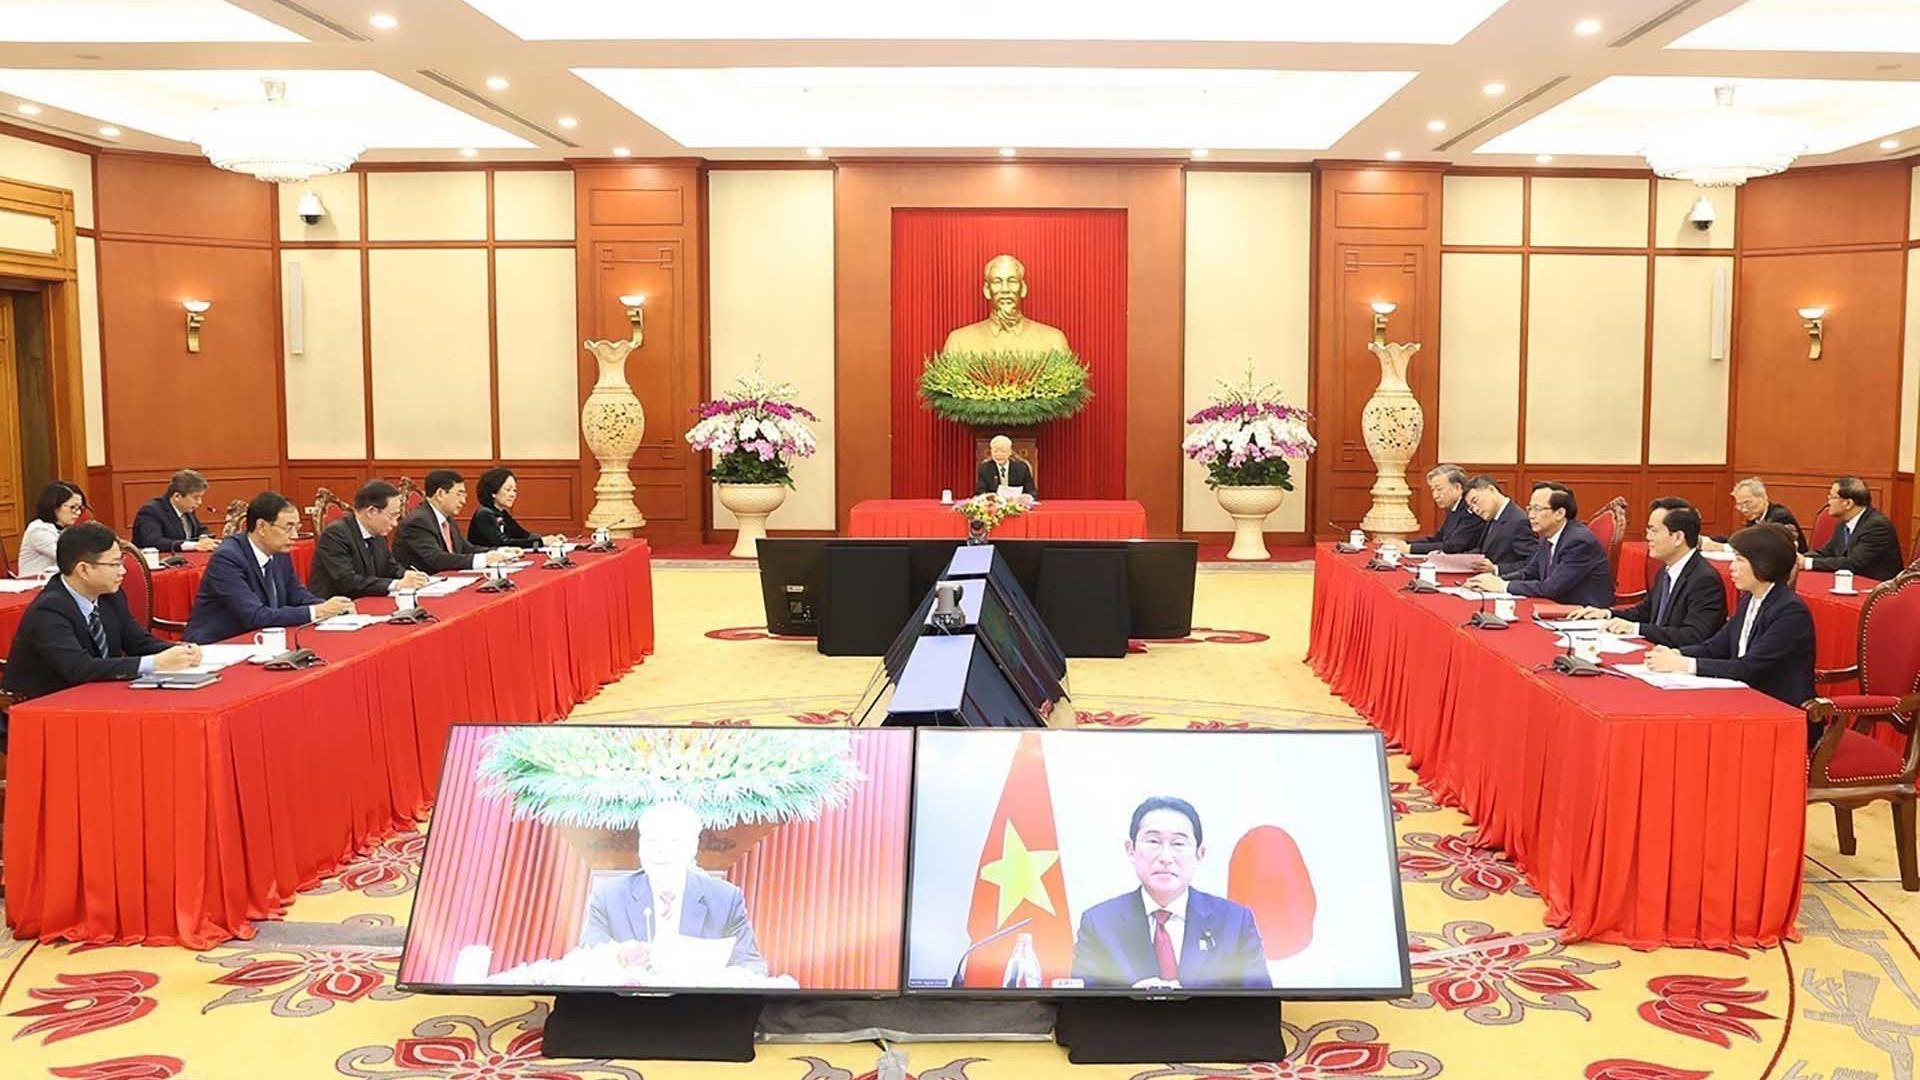 Tổng Bí thư Nguyễn Phú Trọng hội đàm trực tuyến cấp cao với Chủ tịch Đảng Dân chủ tự do, Thủ tướng Nhật Bản